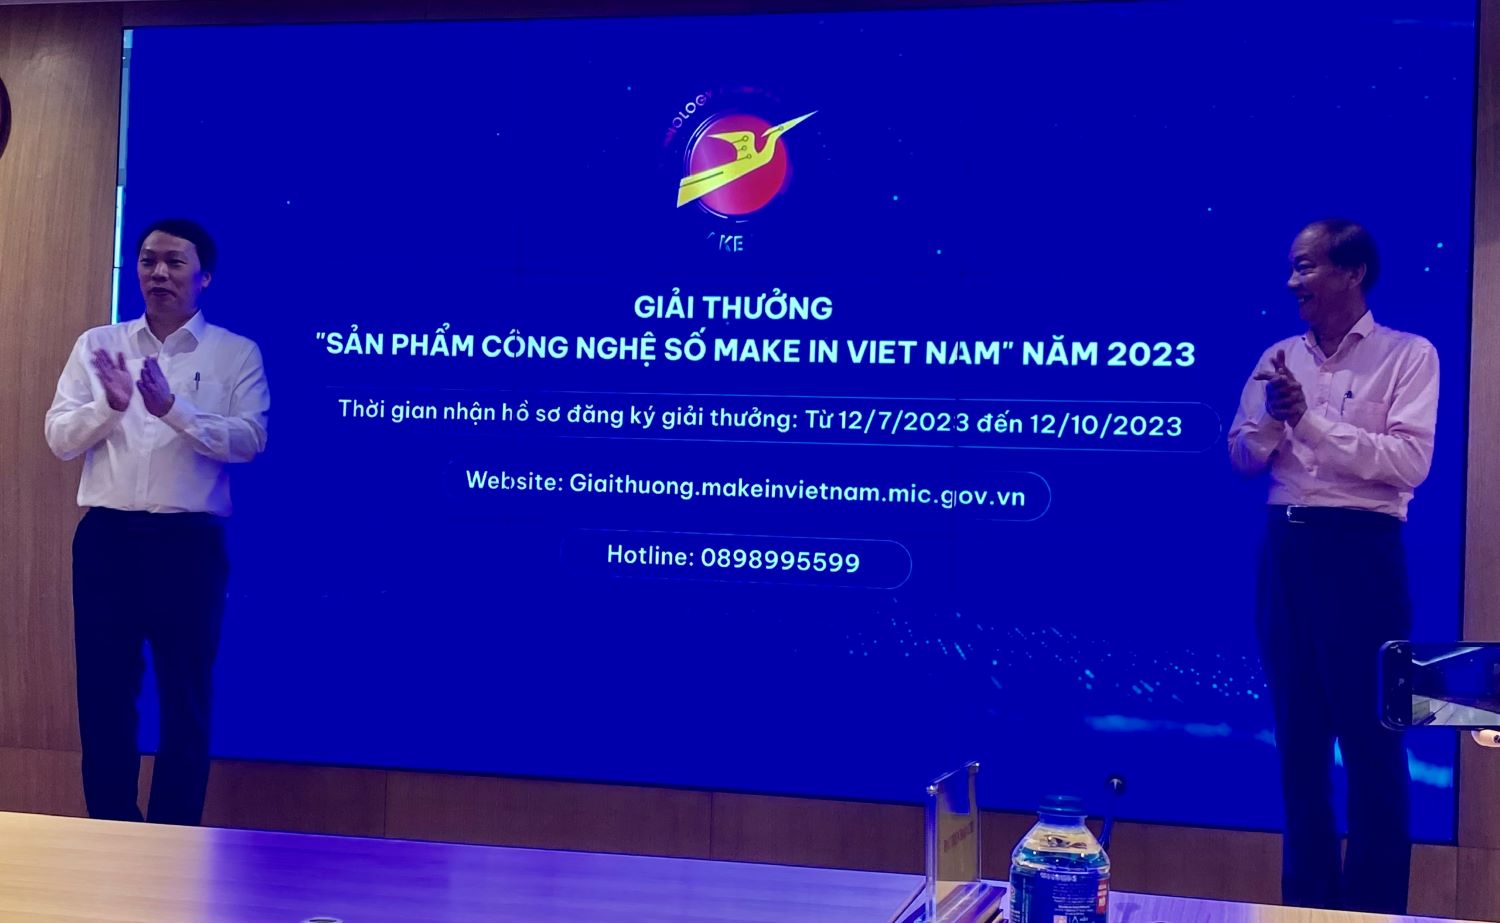 Thúc đẩy sản phẩm công nghệ số Make in Viet Nam trên trường quốc tế